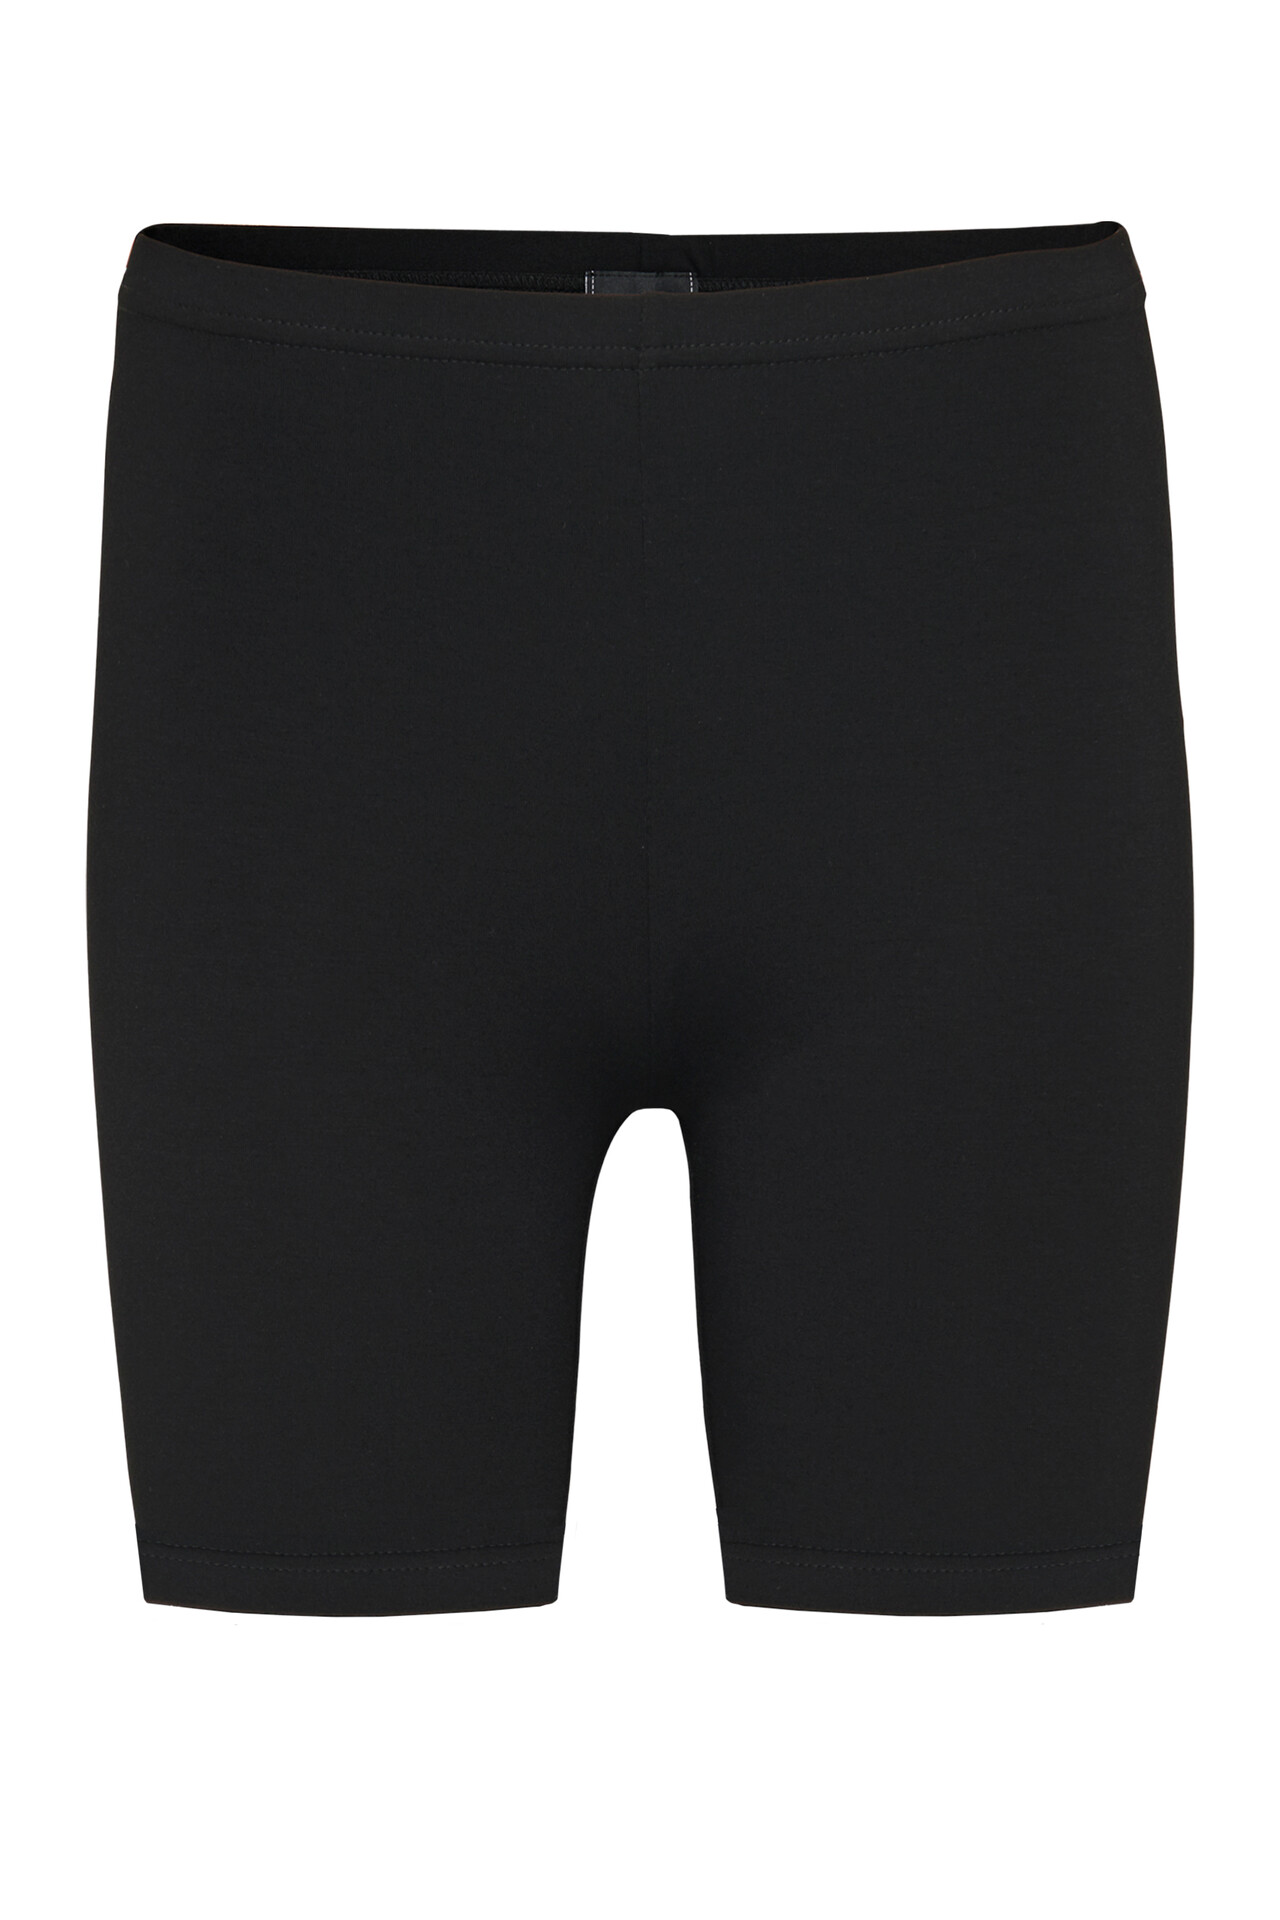 CRÉTON CRMamie shorts  (SORT M)